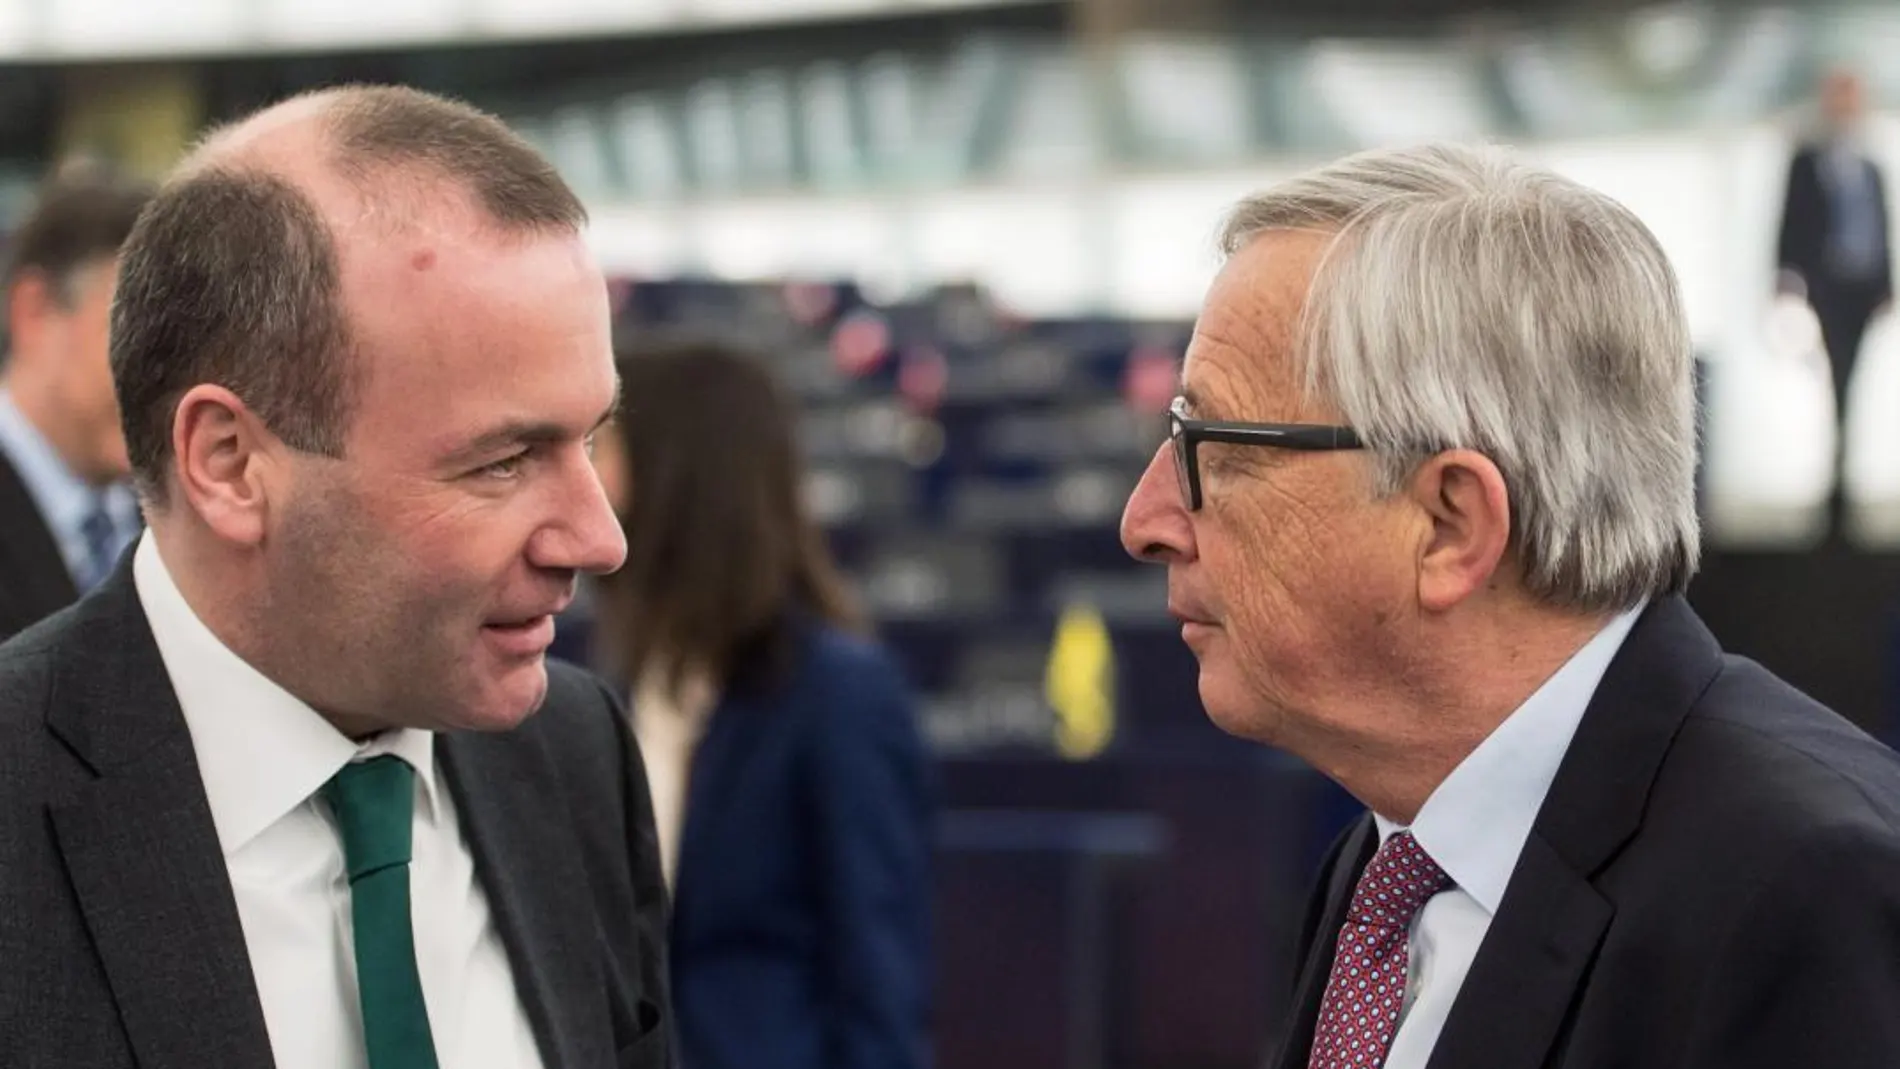 Imagen de archivo que muestra a Manfred Weber (i), líder del Partido Popular Europeo (EPP), mientras conversa con el actual presidente de la Comisión Europea (CE), Jean-Claude Juncker (d).